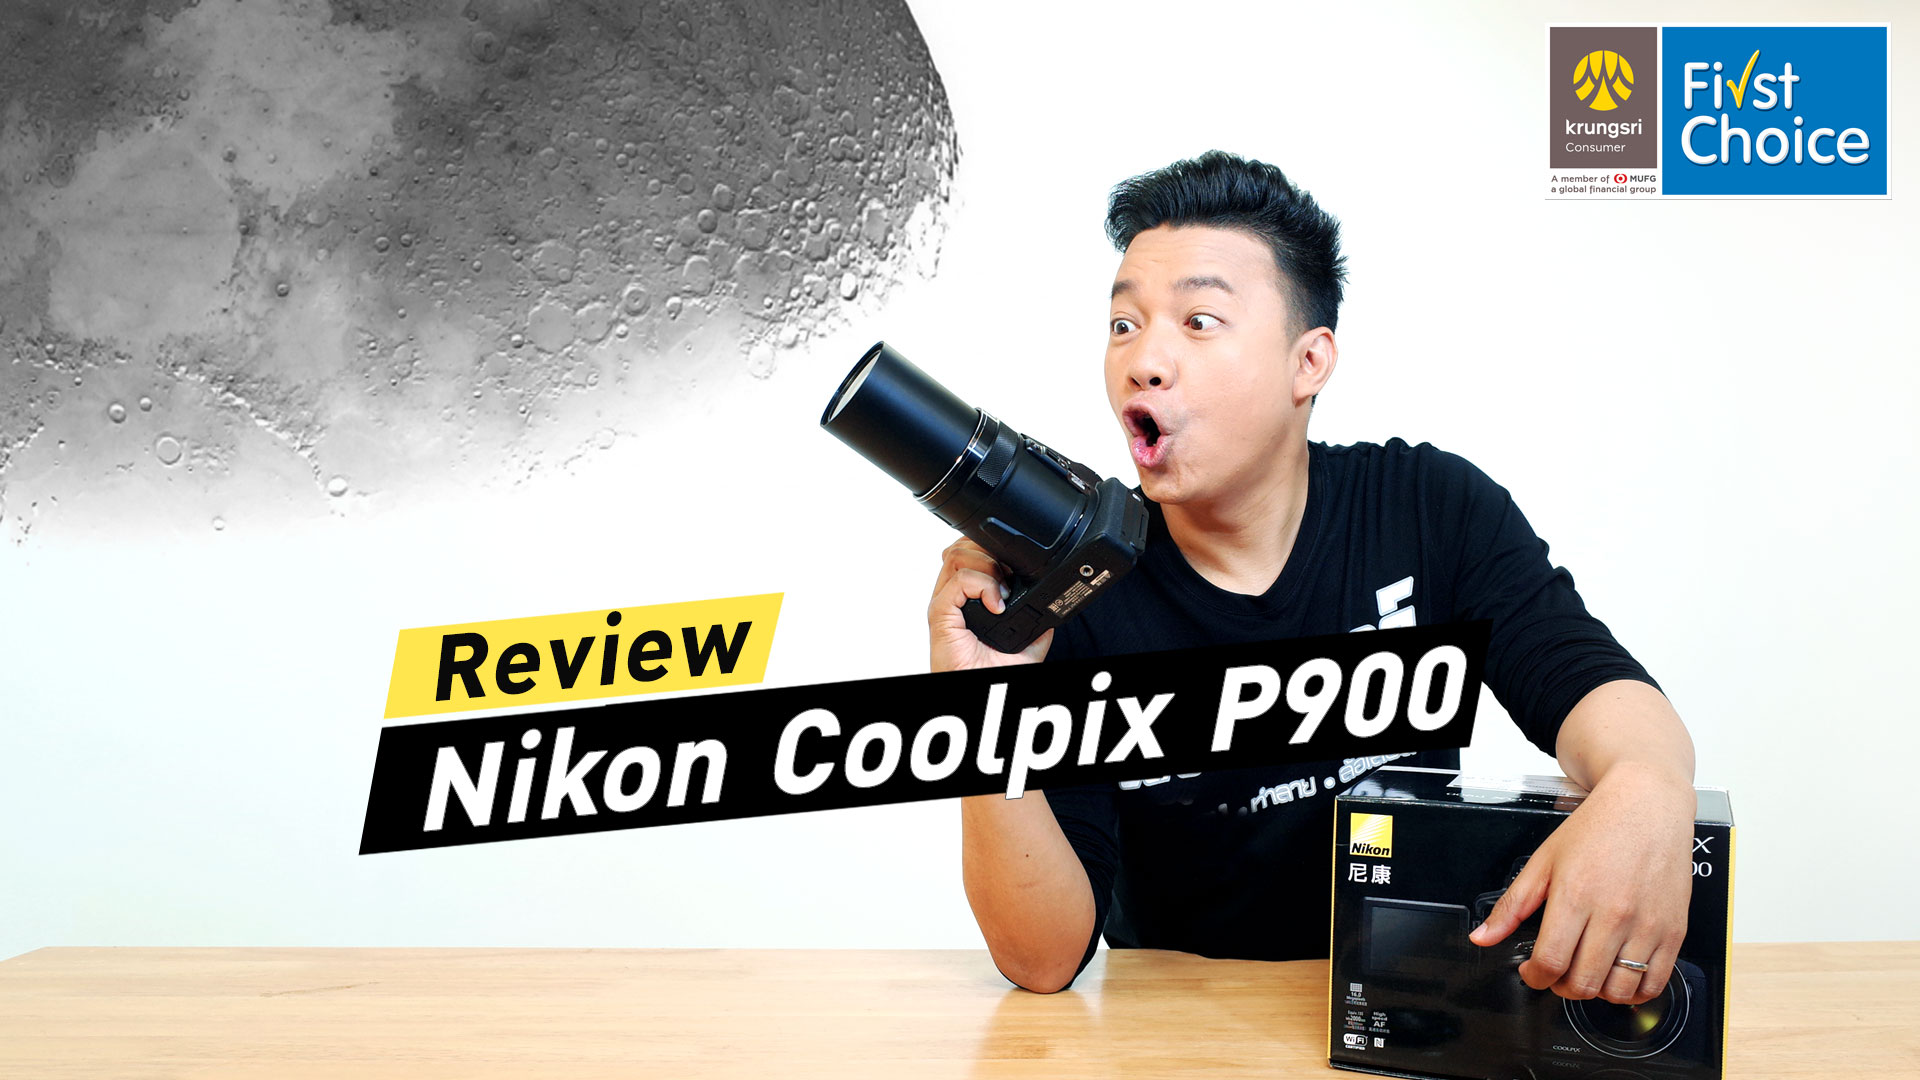 รีวิว Nikon Coolpix P900 สุดยอดกล้องซูมระดับเห็นสิวดวงจันทร์!